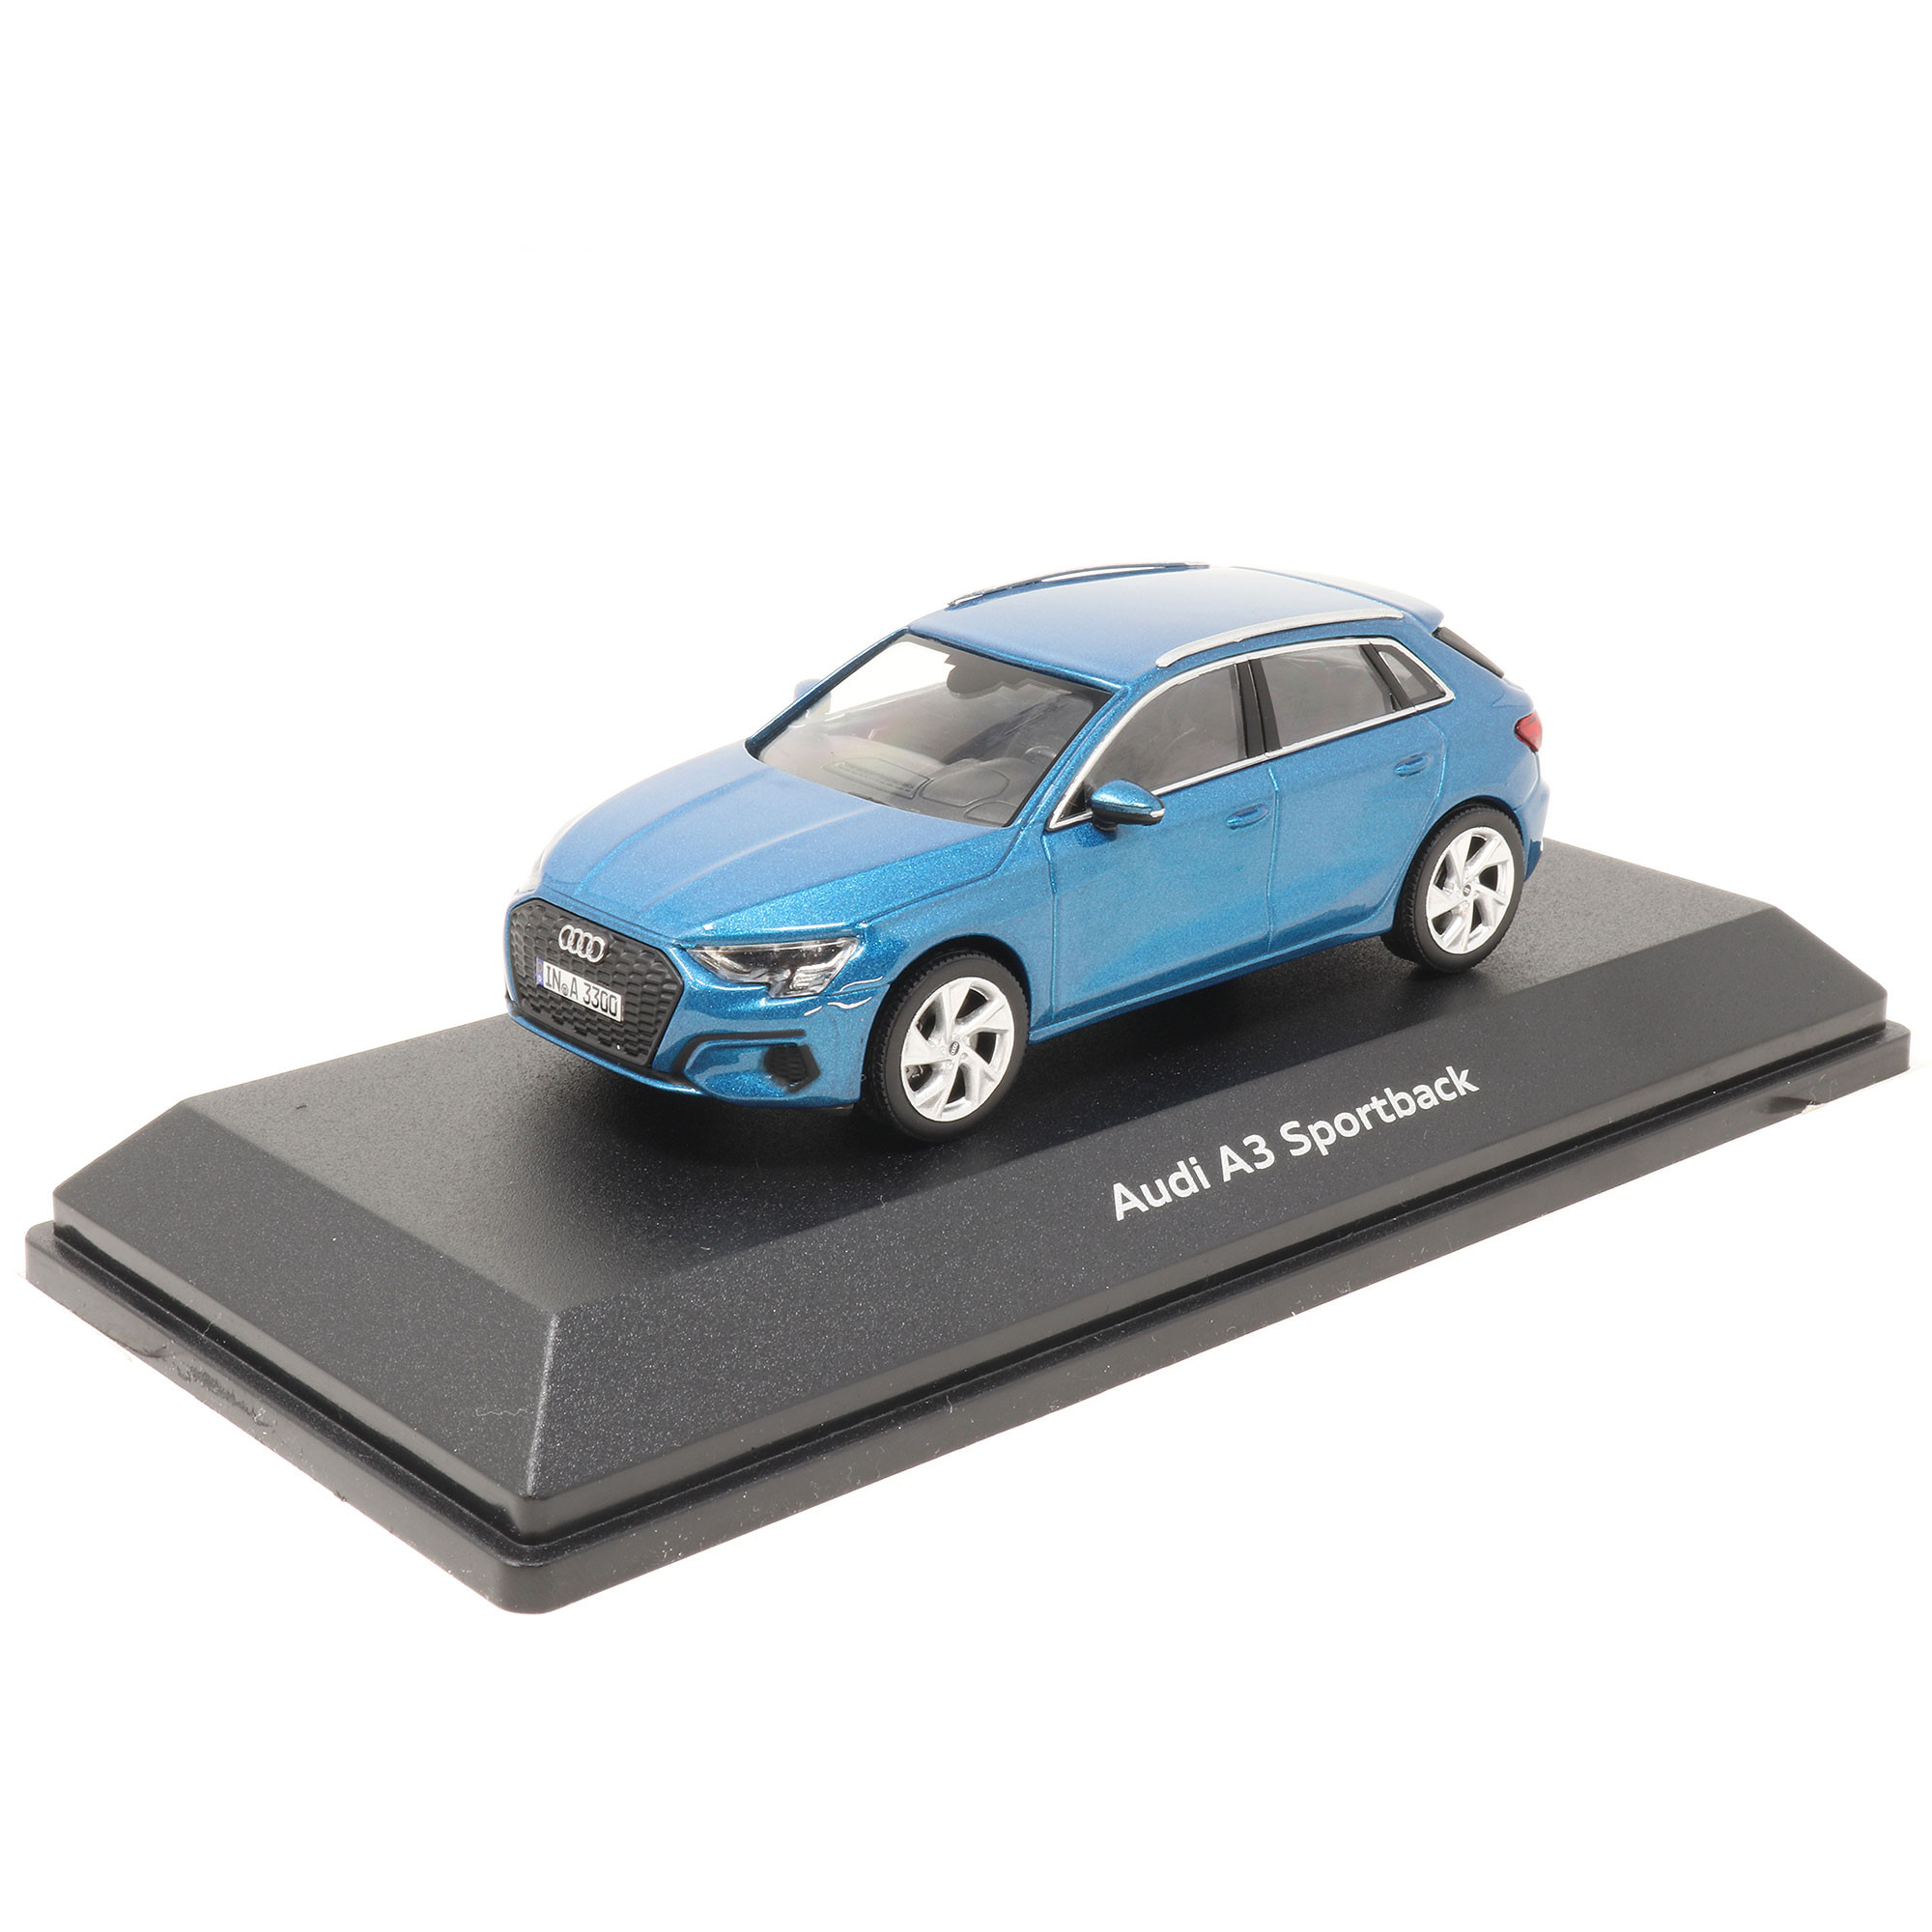 Voiture miniature Audi Sport modèle original 1:43 A3 Sportback bleu modèle  5011903031.